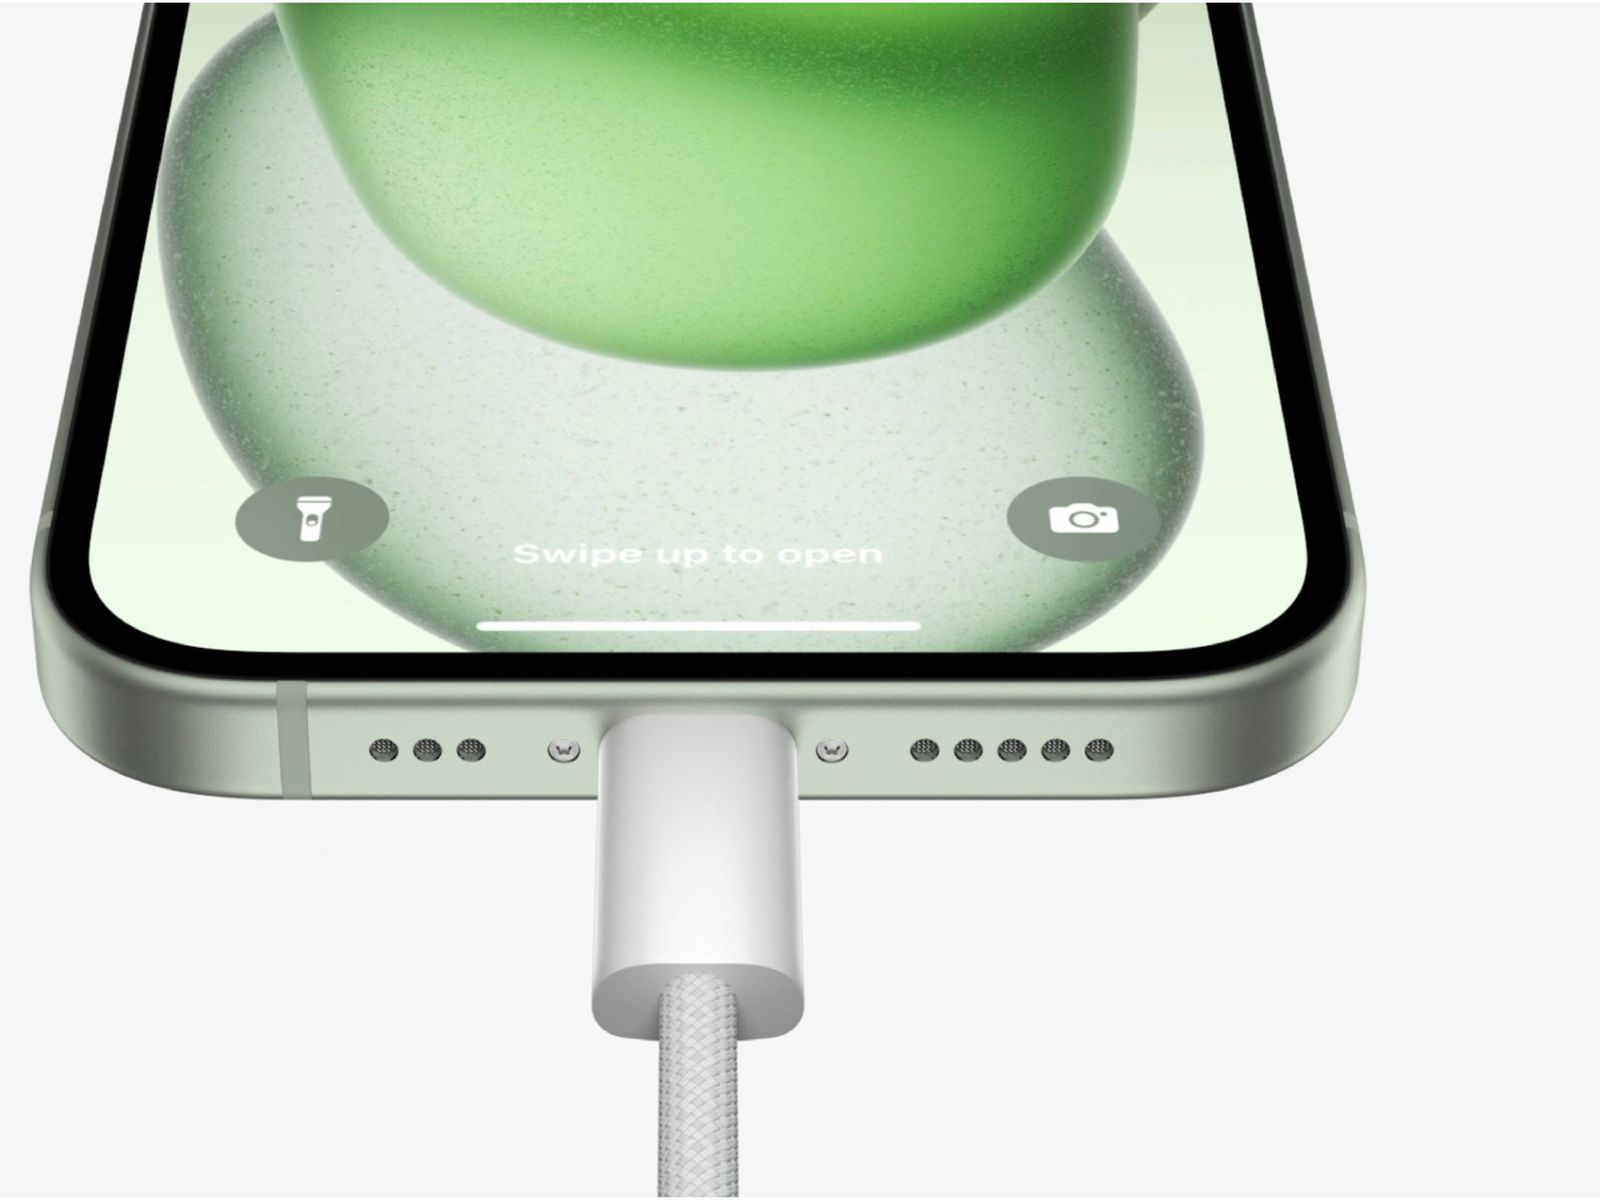 USB-C do iPhone 15 pode funcionar apenas com cabos oficiais da Apple -  Canaltech